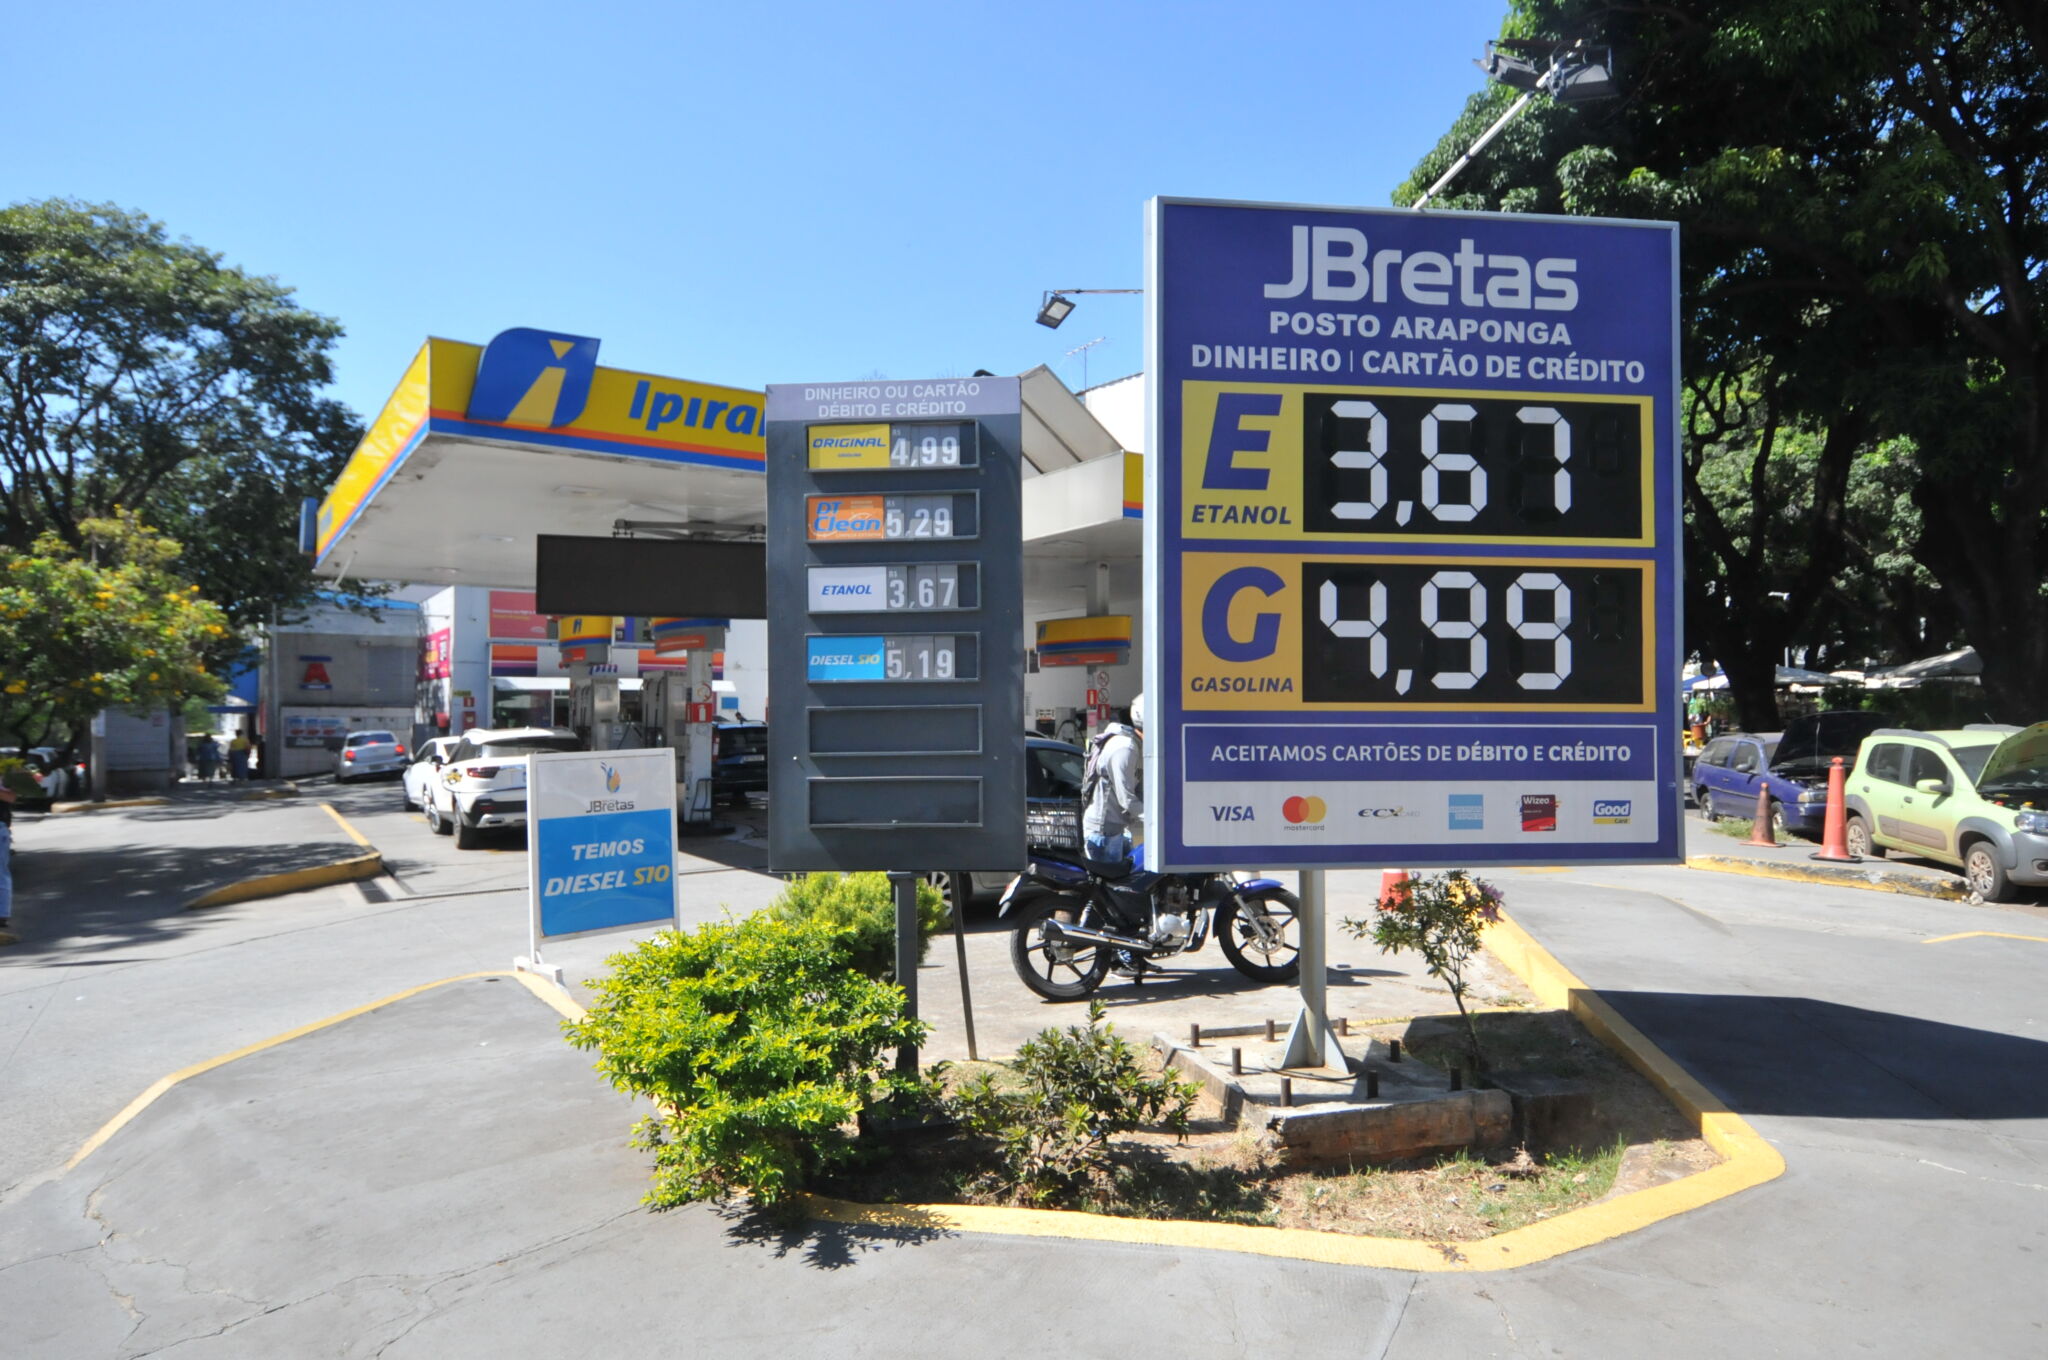 Distrito Federal, Minas Gerais, Rio e São Paulo são alguns dos locais em que vale a pena abastecer com etanol ao invés de gasolina